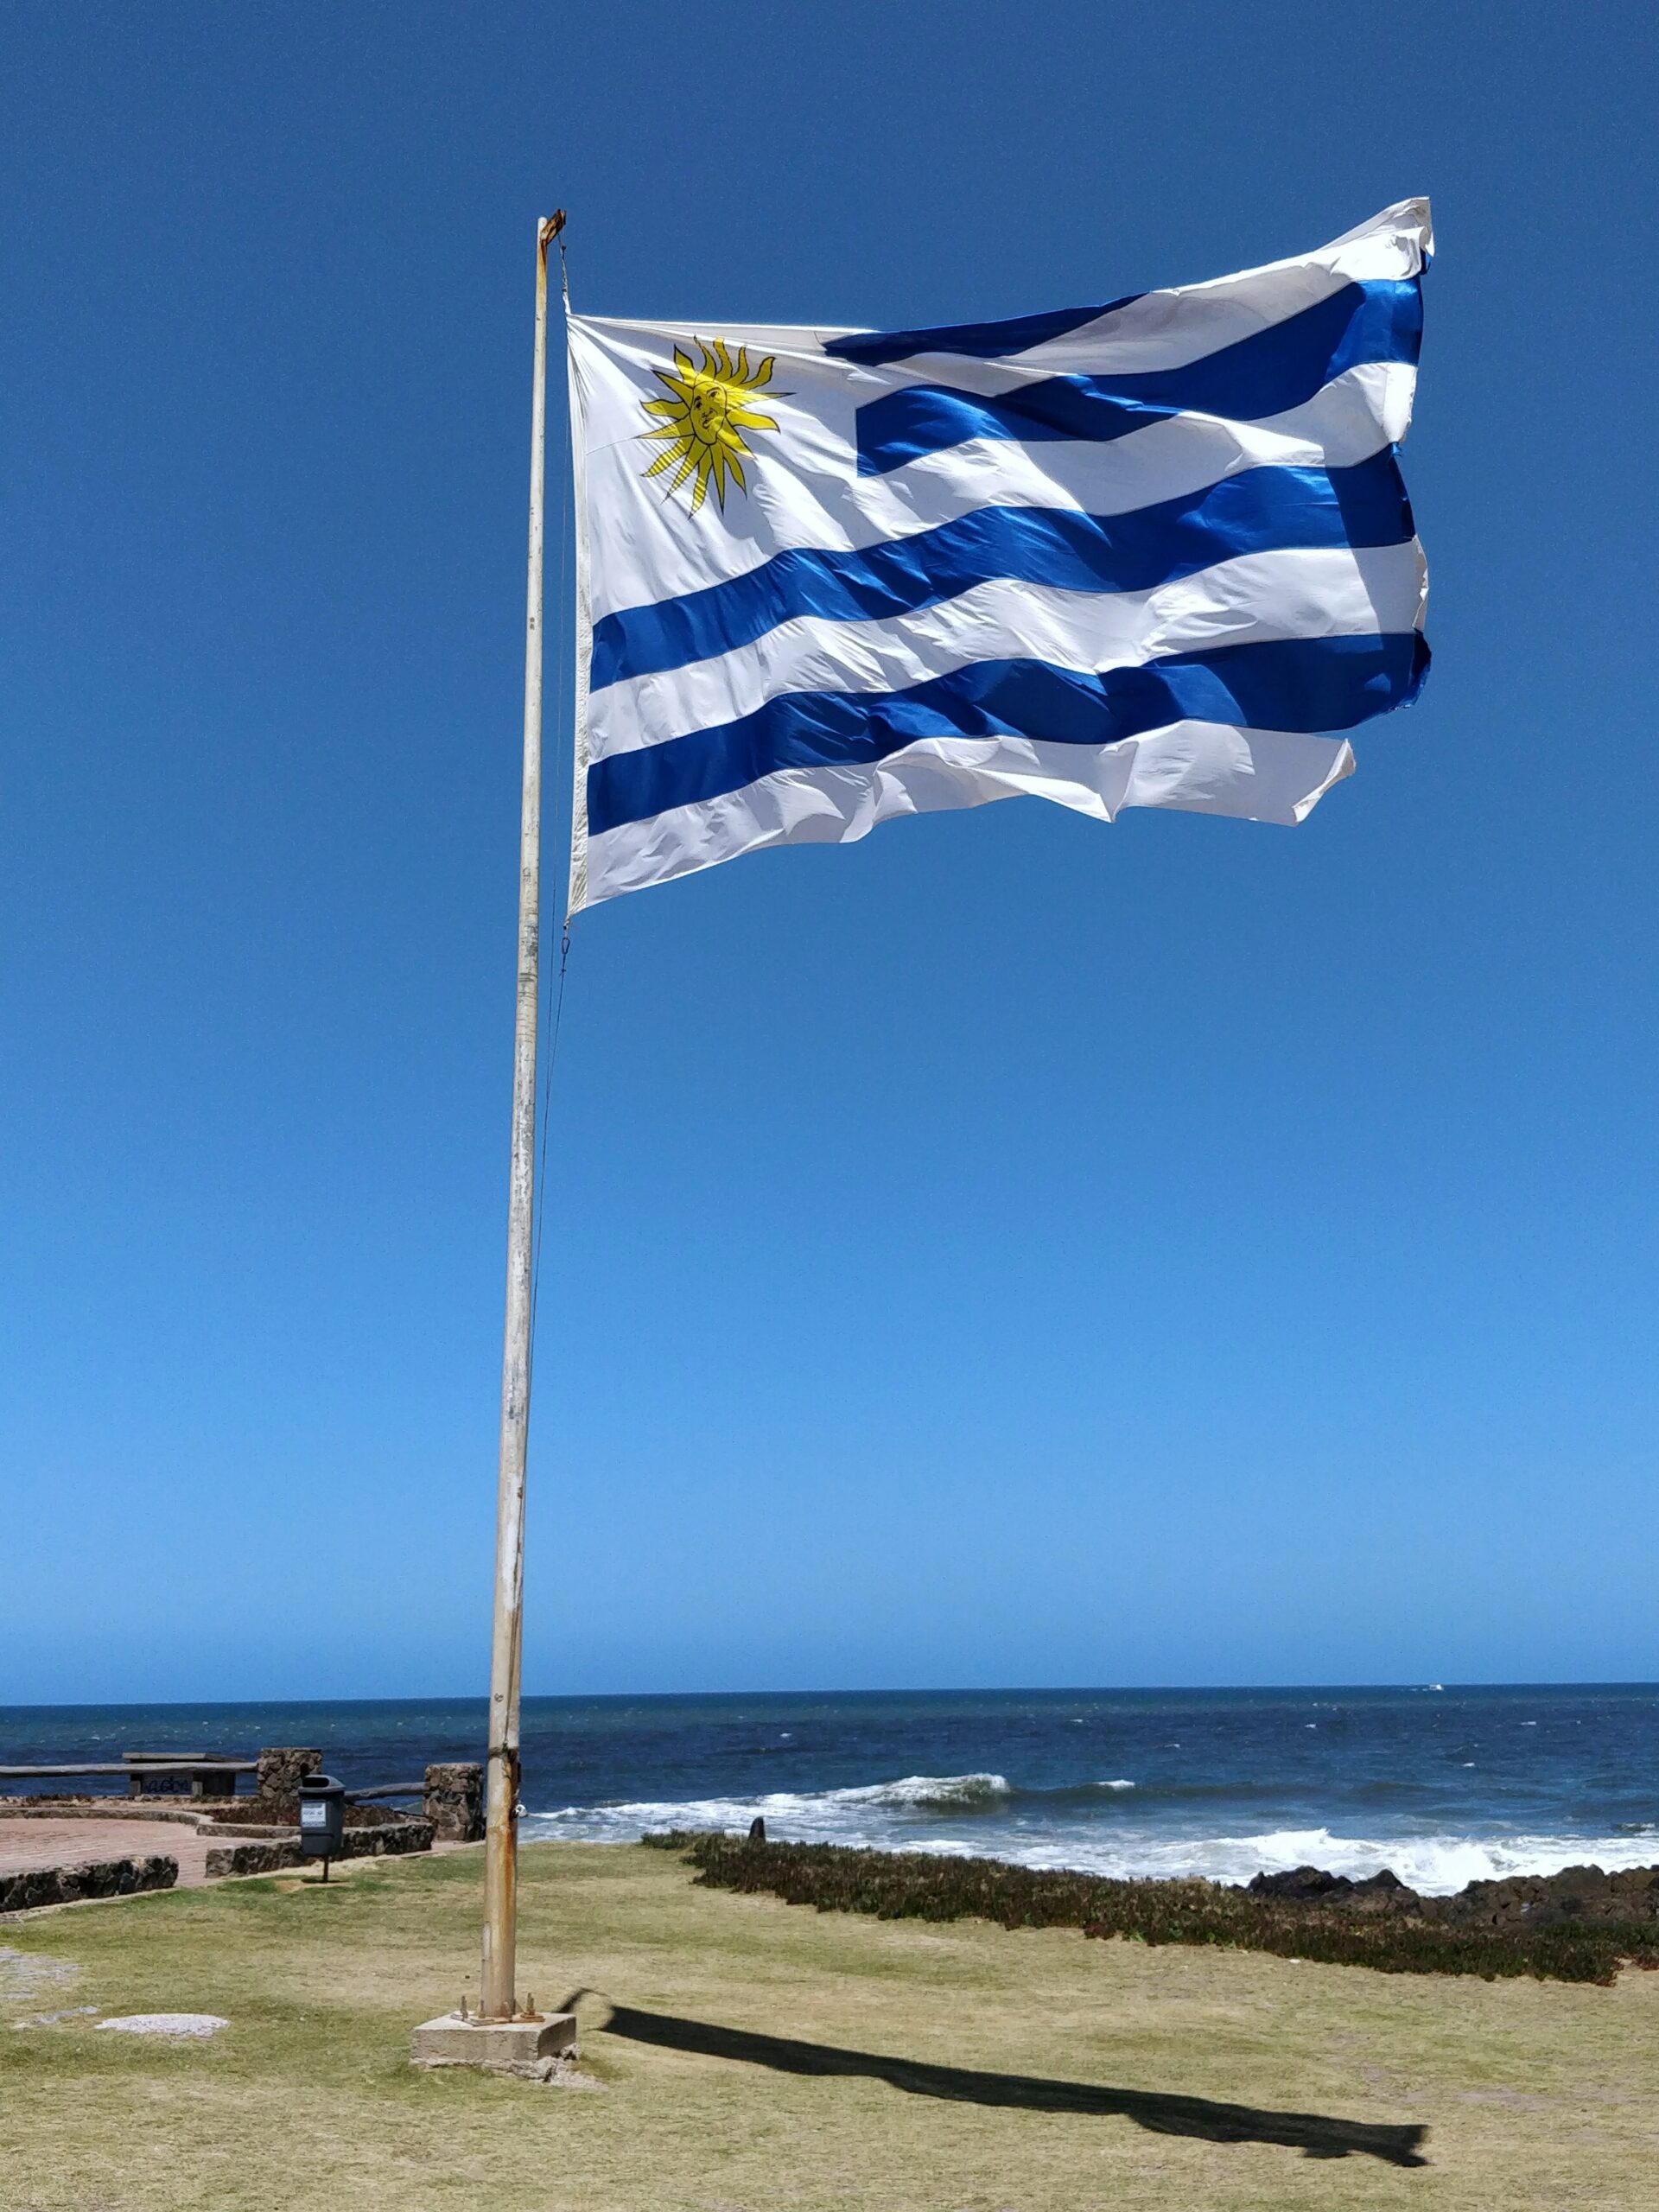 invertir en uruguay